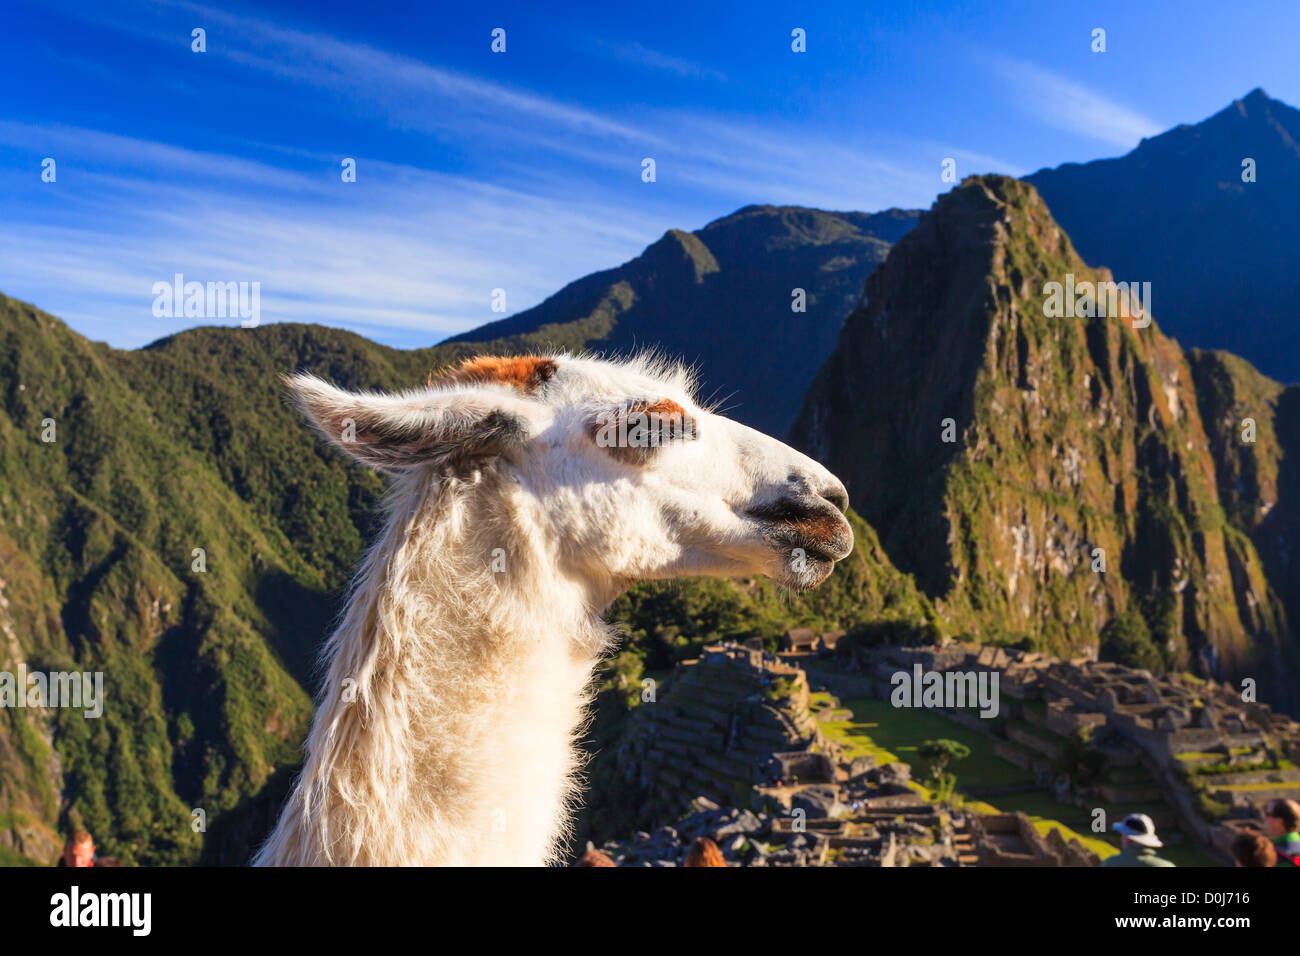 Llama in Machu Picchu Archeological Site, Cuzco Province, Peru Stock Photo